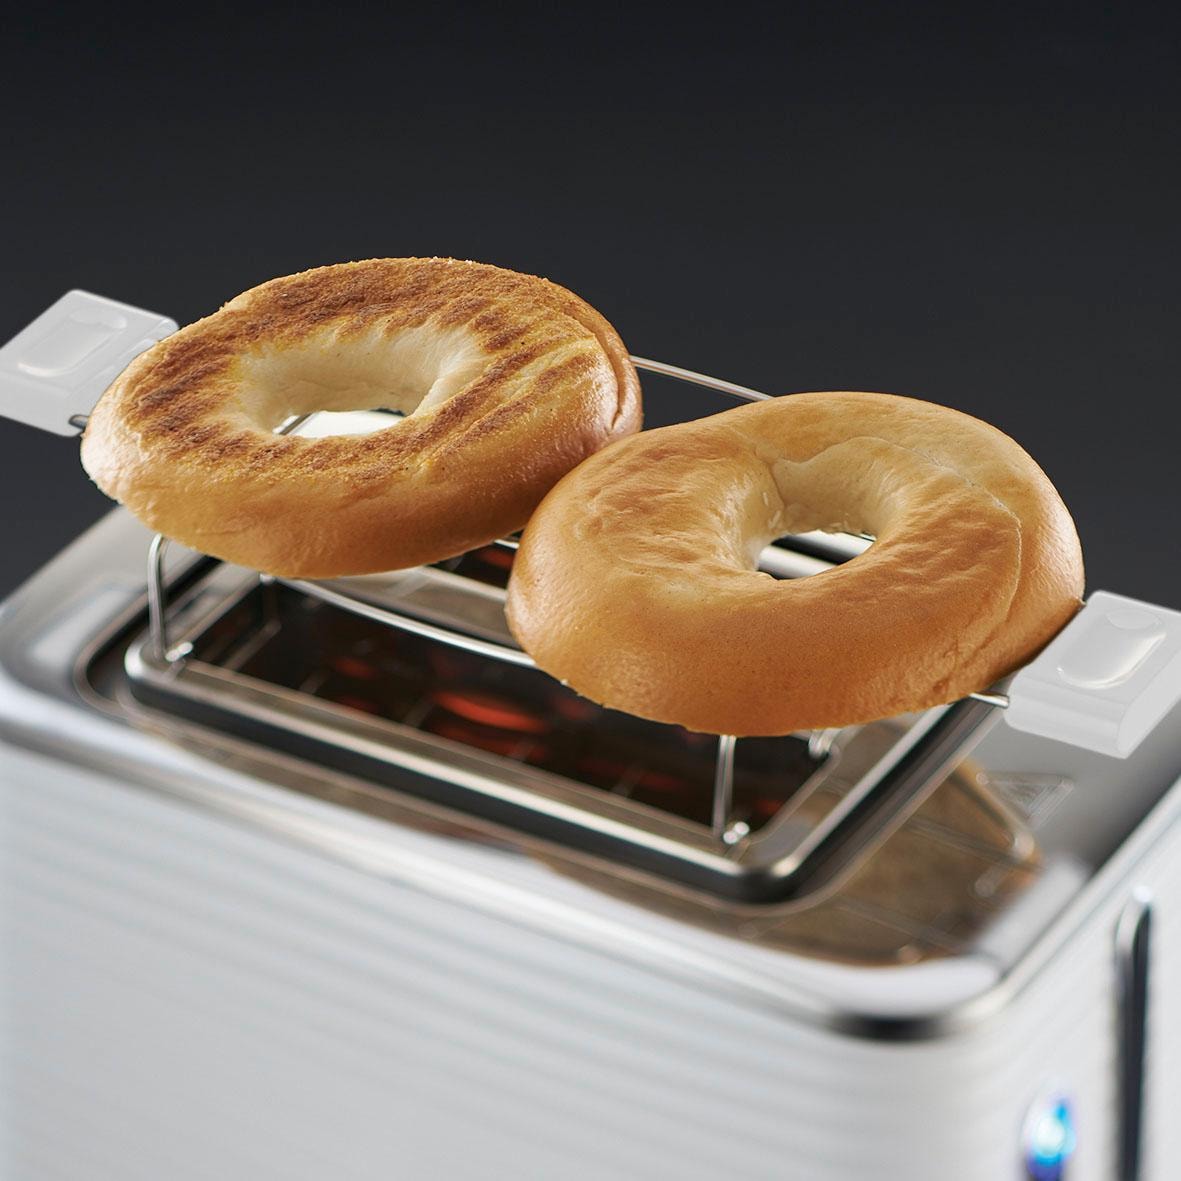 RUSSELL HOBBS Toaster »Inspire 24370-56«, 2 kurze Schlitze, 1050 W, 2 extra  breite Toastschlitze, Brötchenaufsatz & Krümelschublade kaufen | BAUR